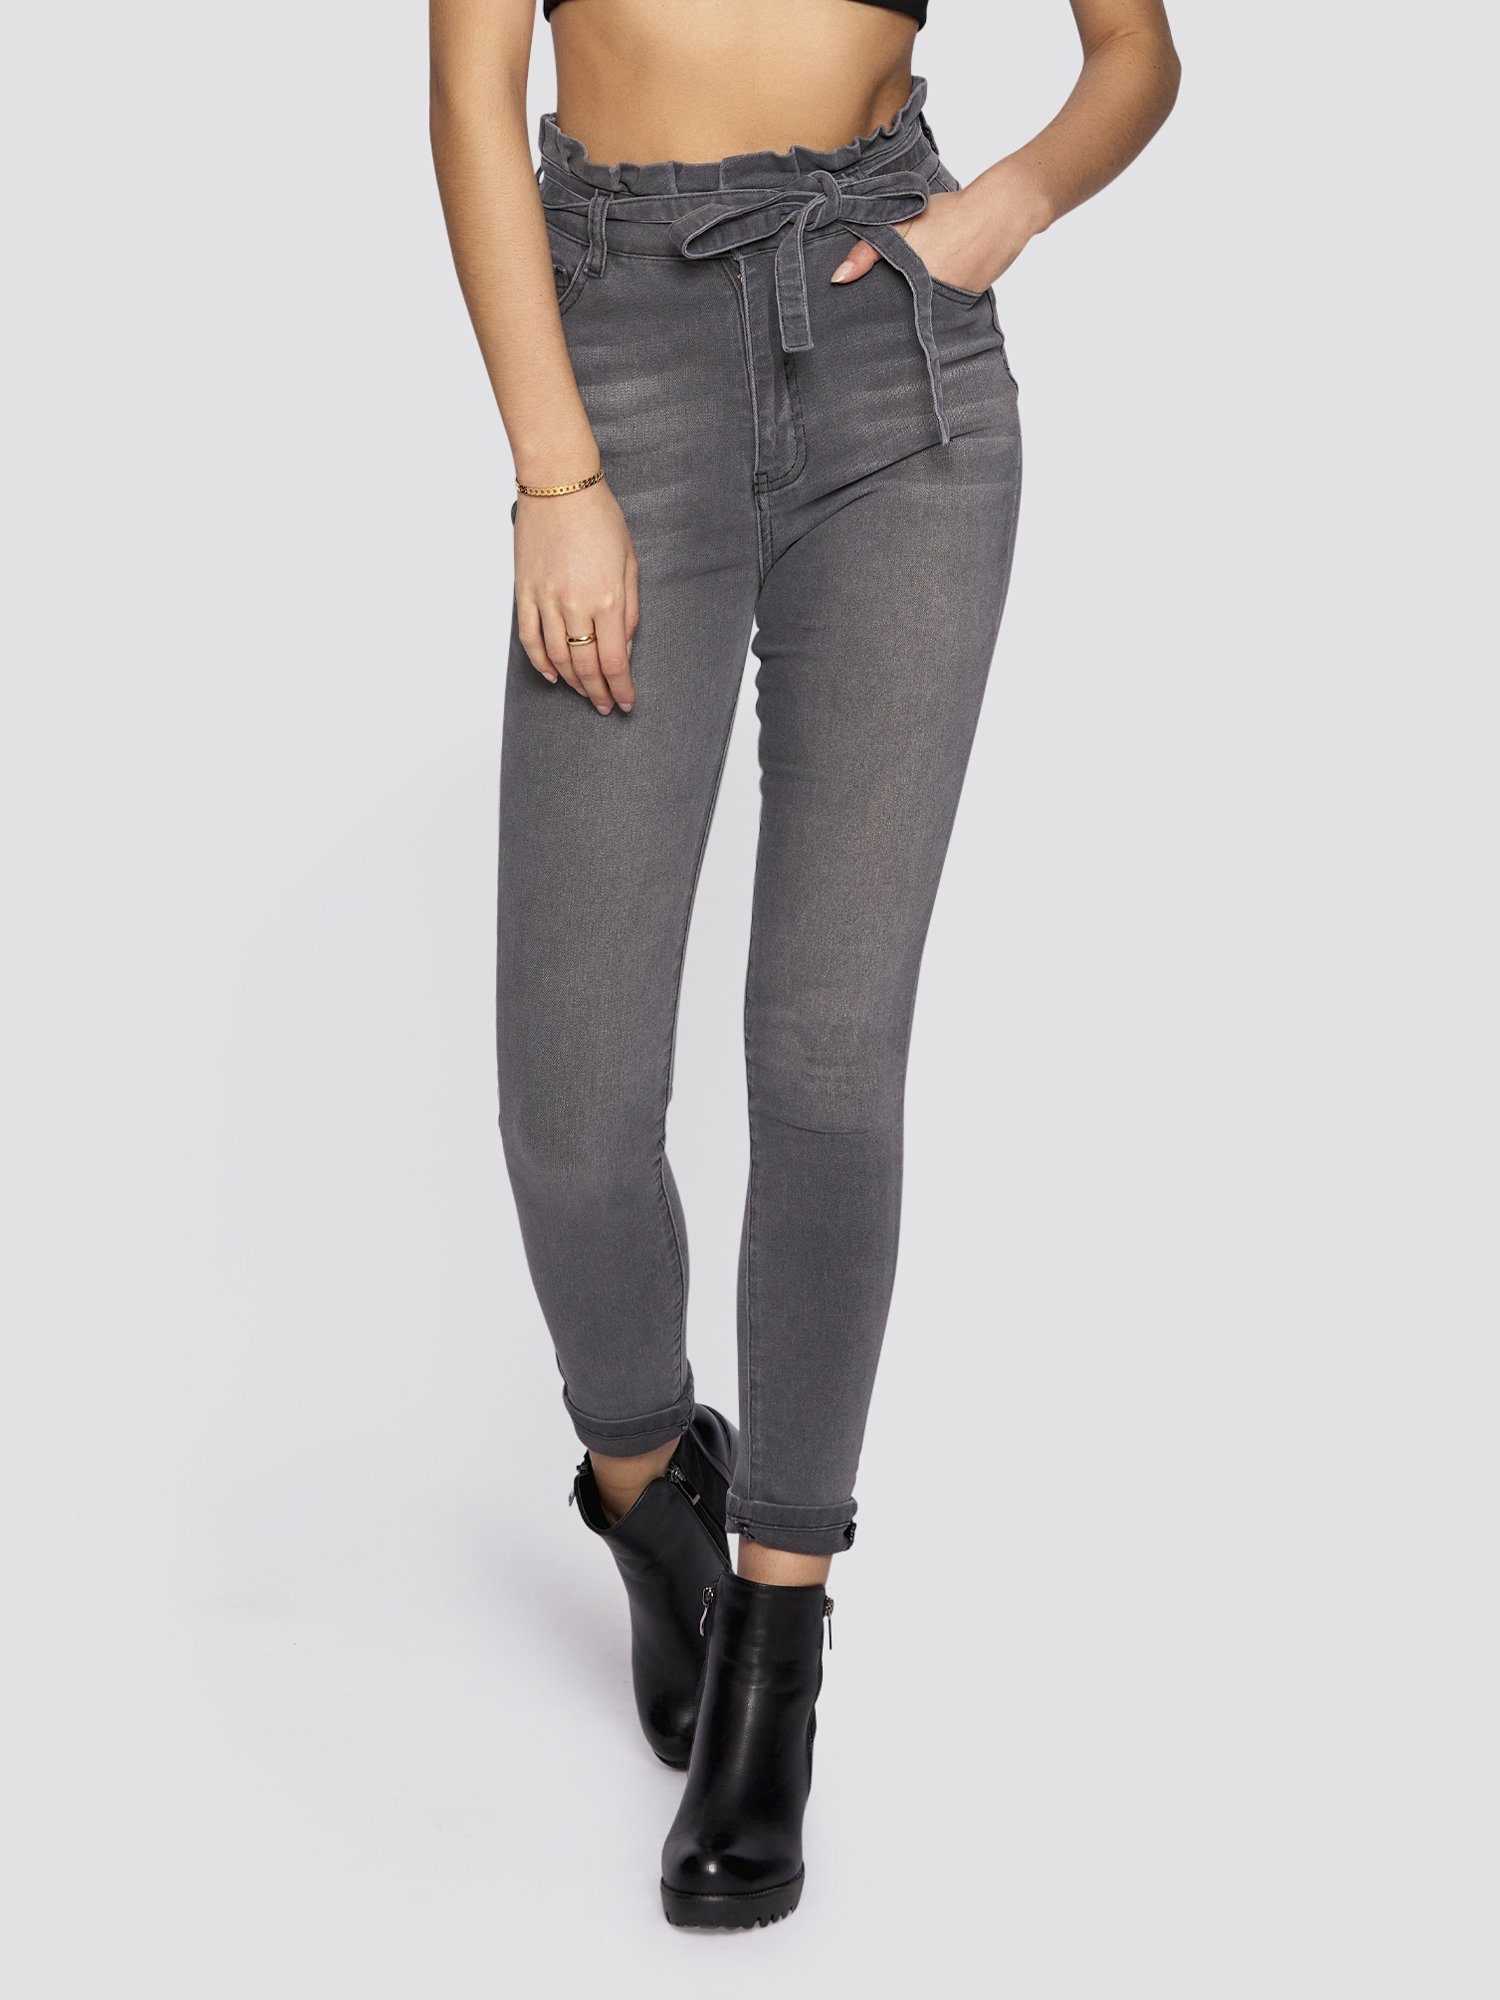 grau mit High-waist-Jeans Freshlions Bindegurt Jeans